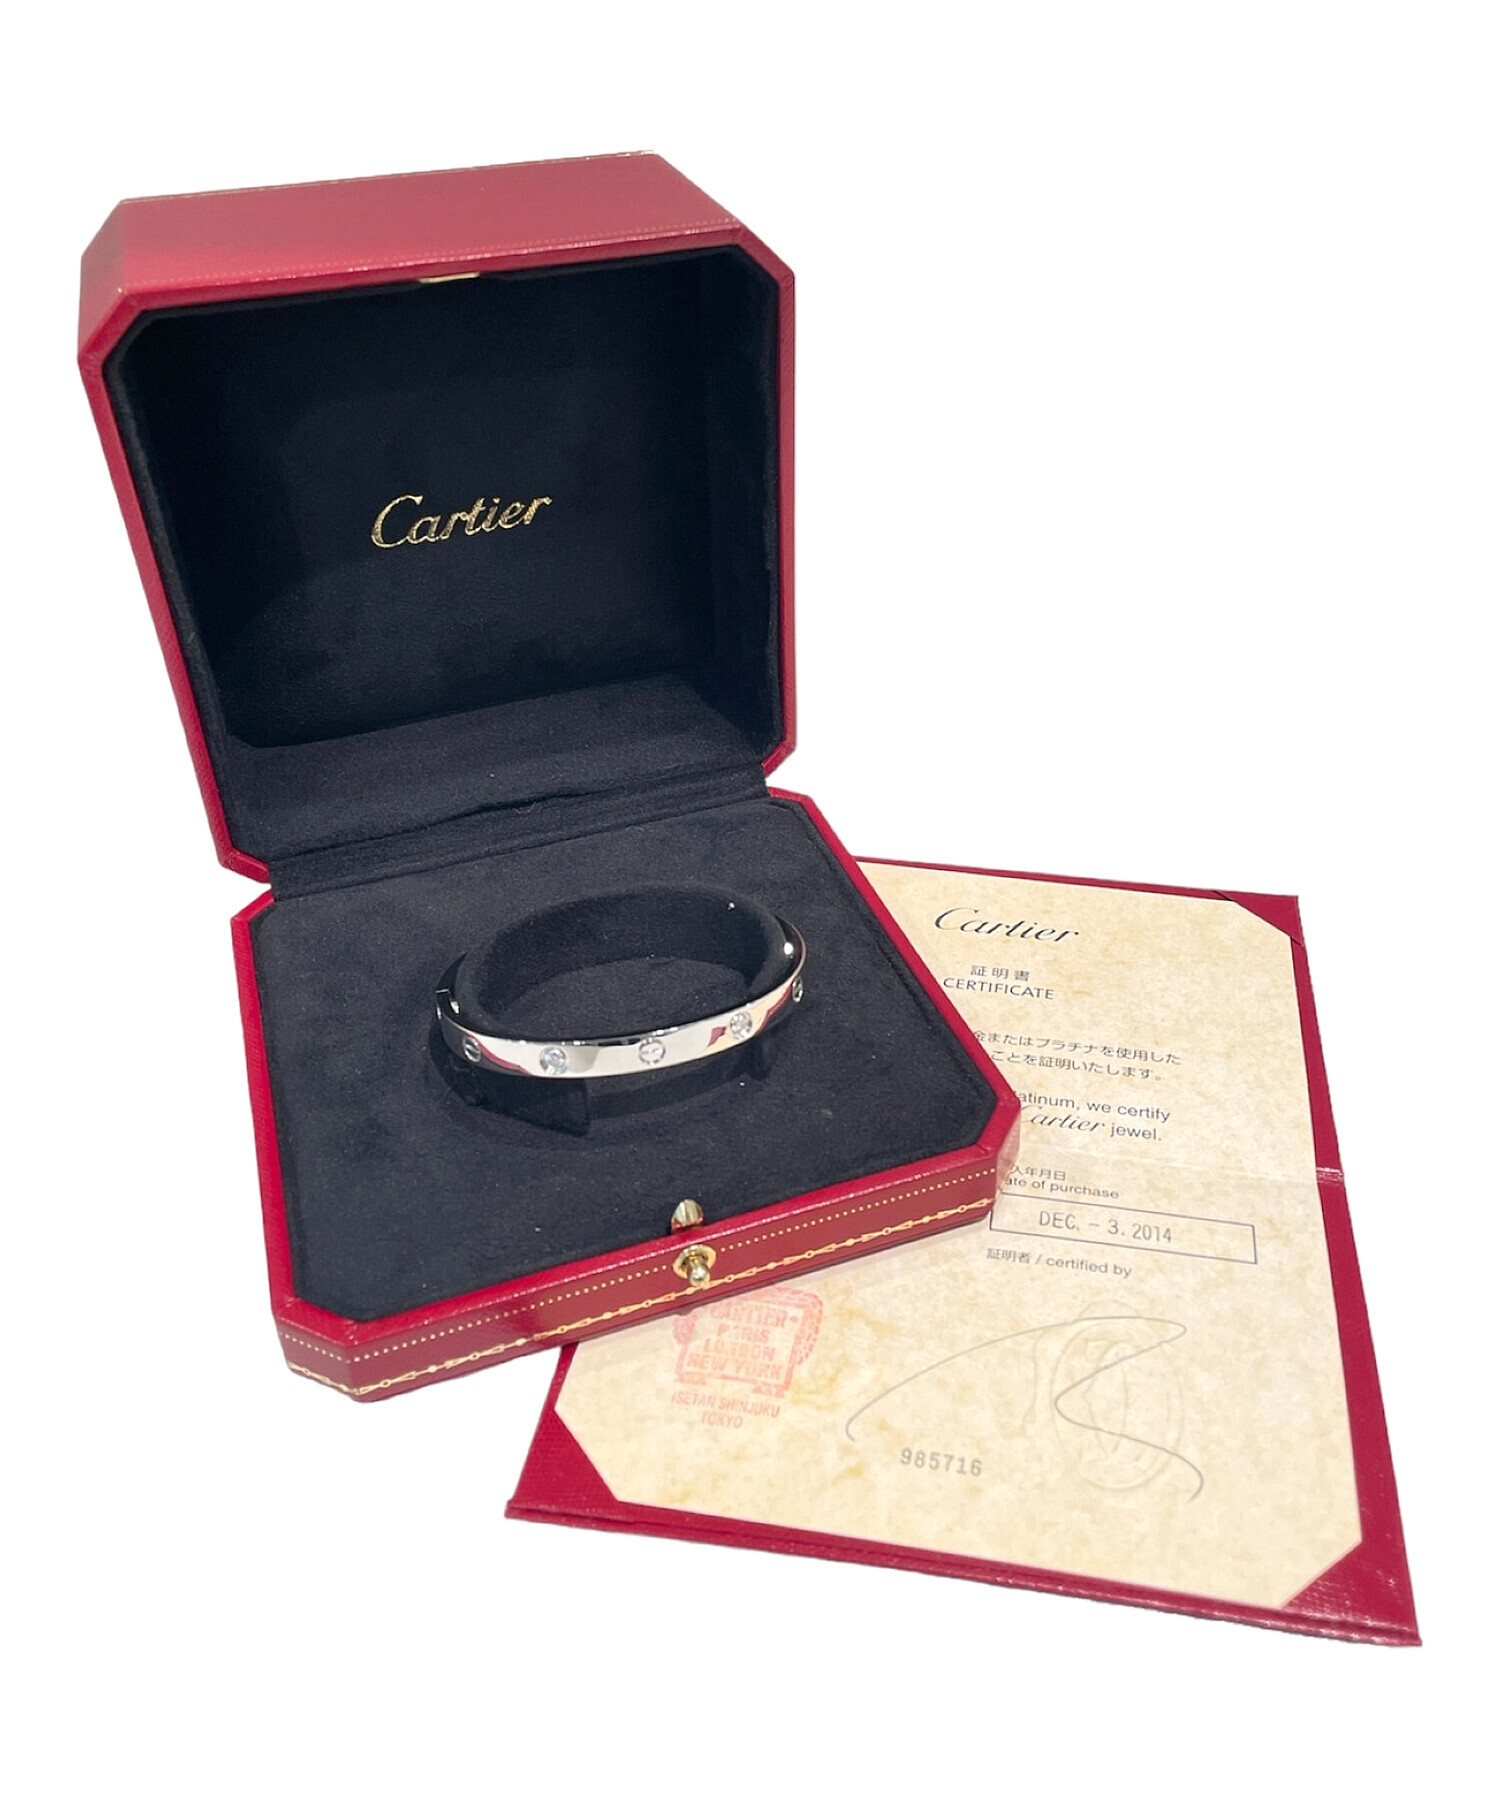 Cartier (カルティエ) ハーフダイヤラブブレス サイズ:18